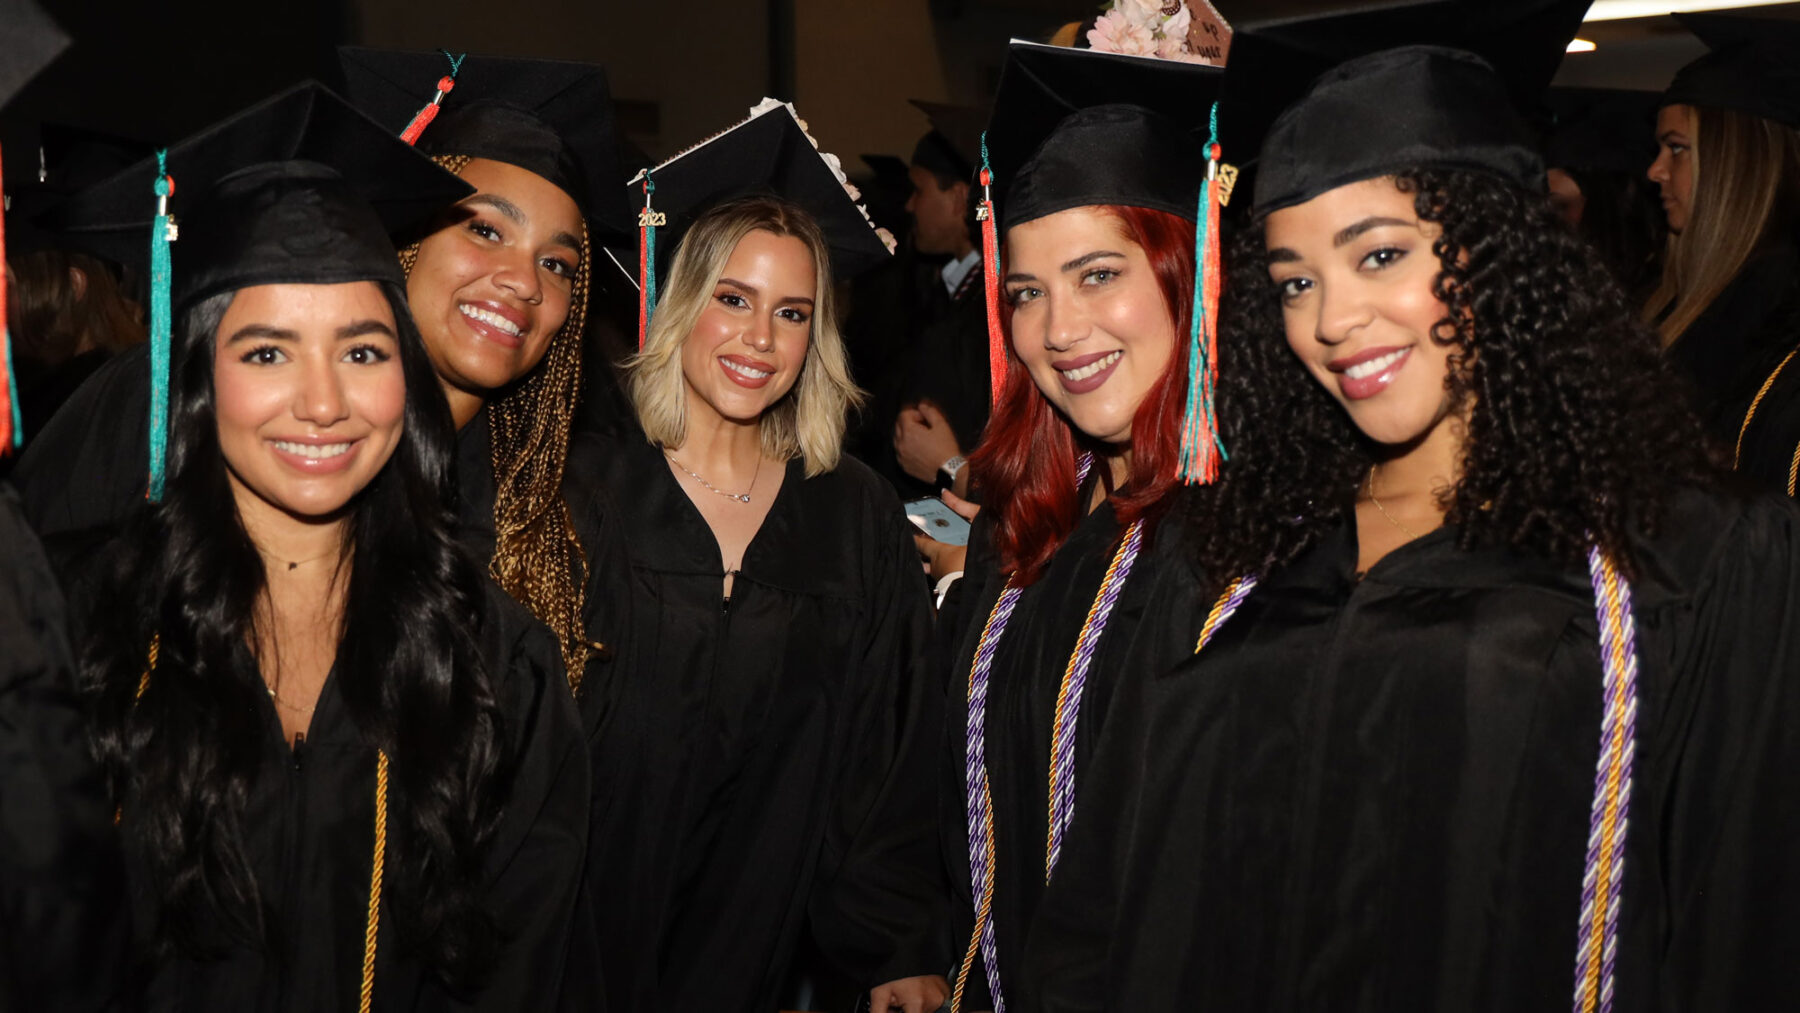 WCU-Miami graduates celebrate at Miami-Dade Auditorium